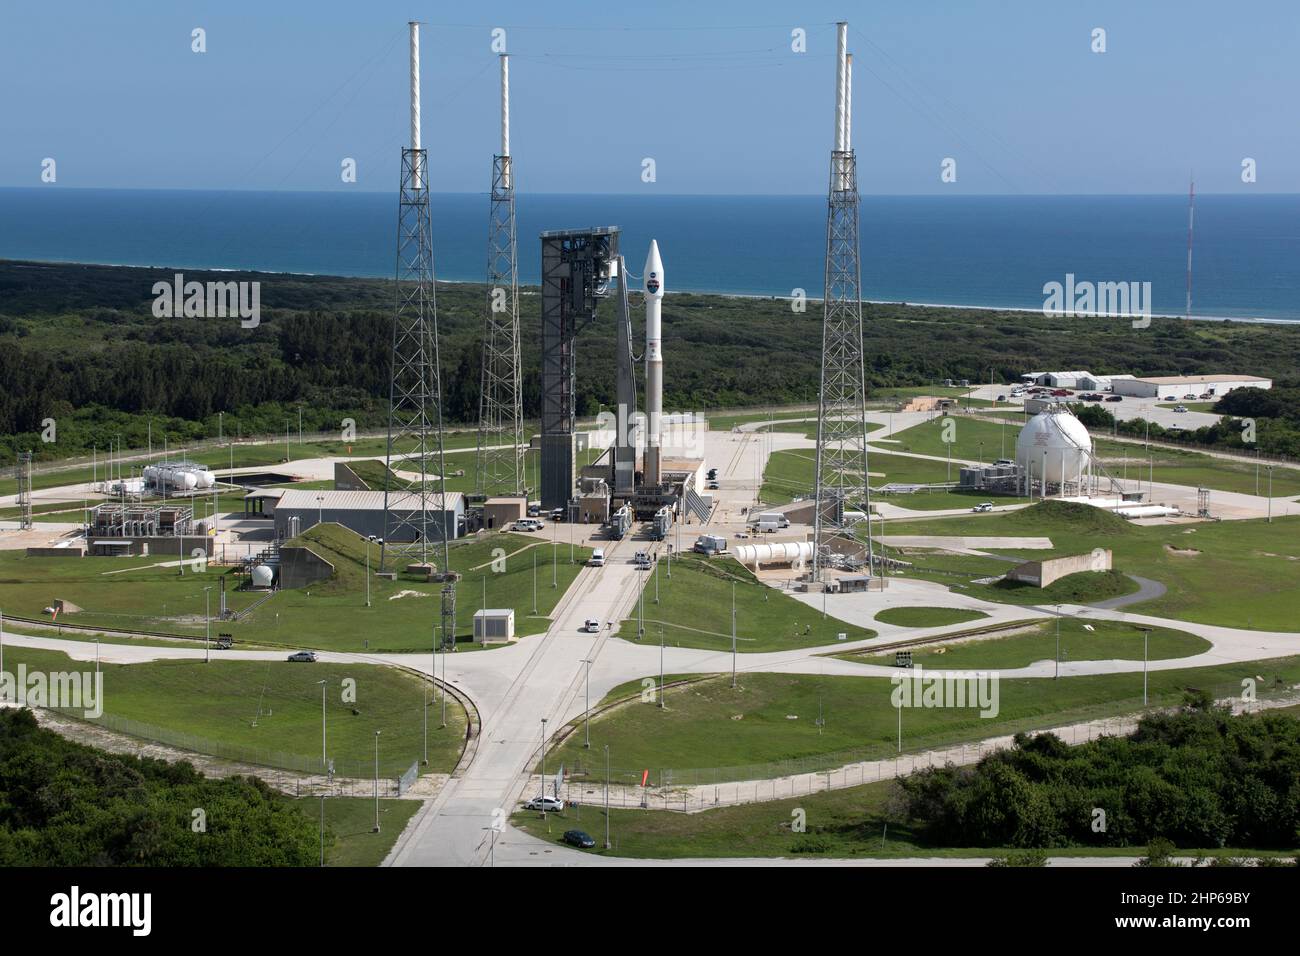 Eine ATLAS V-Rakete der United Launch Alliance steht am Space Launch Complex 41 auf der Cape Canaveral Air Force Station in Florida. Das Trägerrakete wird den Tracking- und Data-Relay-Satelliten der NASA, TDRS-M, in die Umlaufbahn schicken. TDRS-M ist die neueste Raumsonde, die für die Konstellation von Kommunikationssatelliten der Agentur bestimmt ist und nahezu kontinuierlichen Kontakt mit umkreisenden Raumfahrzeugen ermöglicht, von der Internationalen Raumstation und dem Hubble-Weltraumteleskop bis hin zu wissenschaftlichen Observatorien. Der Start auf einer United Launch Alliance ATLAS V-Rakete ist für den Space Launch Complex 41 geplant Stockfoto